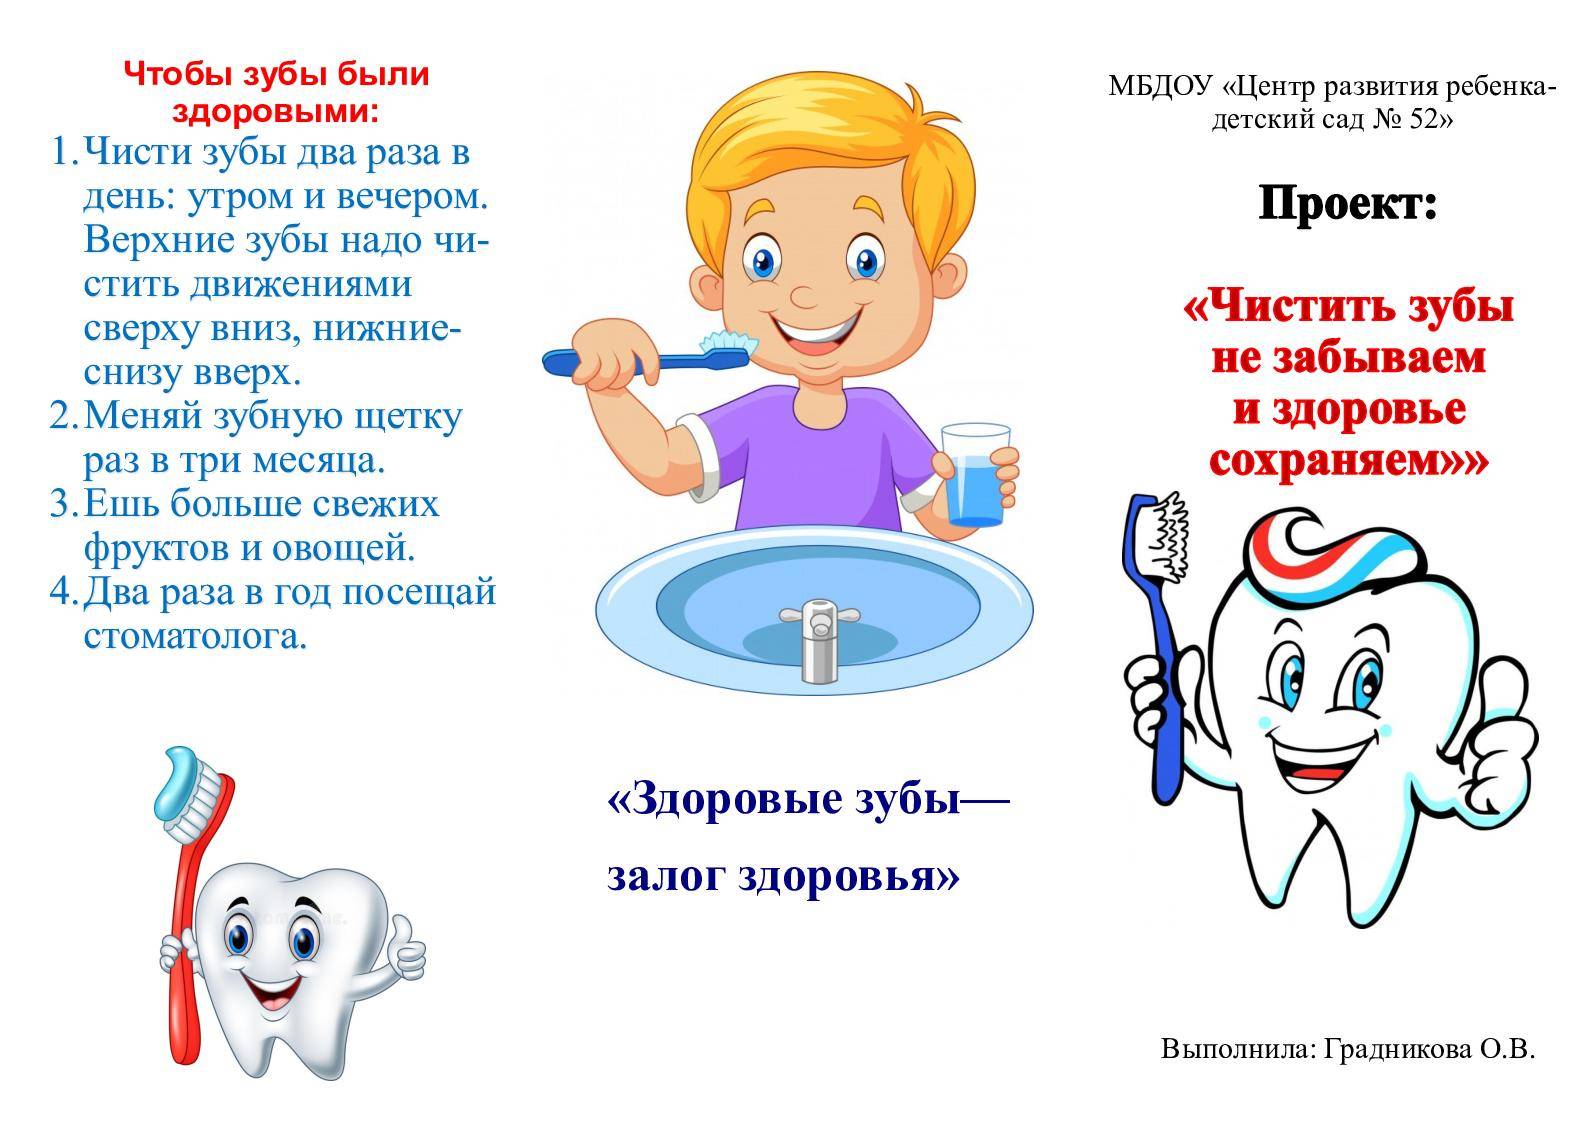 Как правильно чистить зубы ребенку: советы и помощь